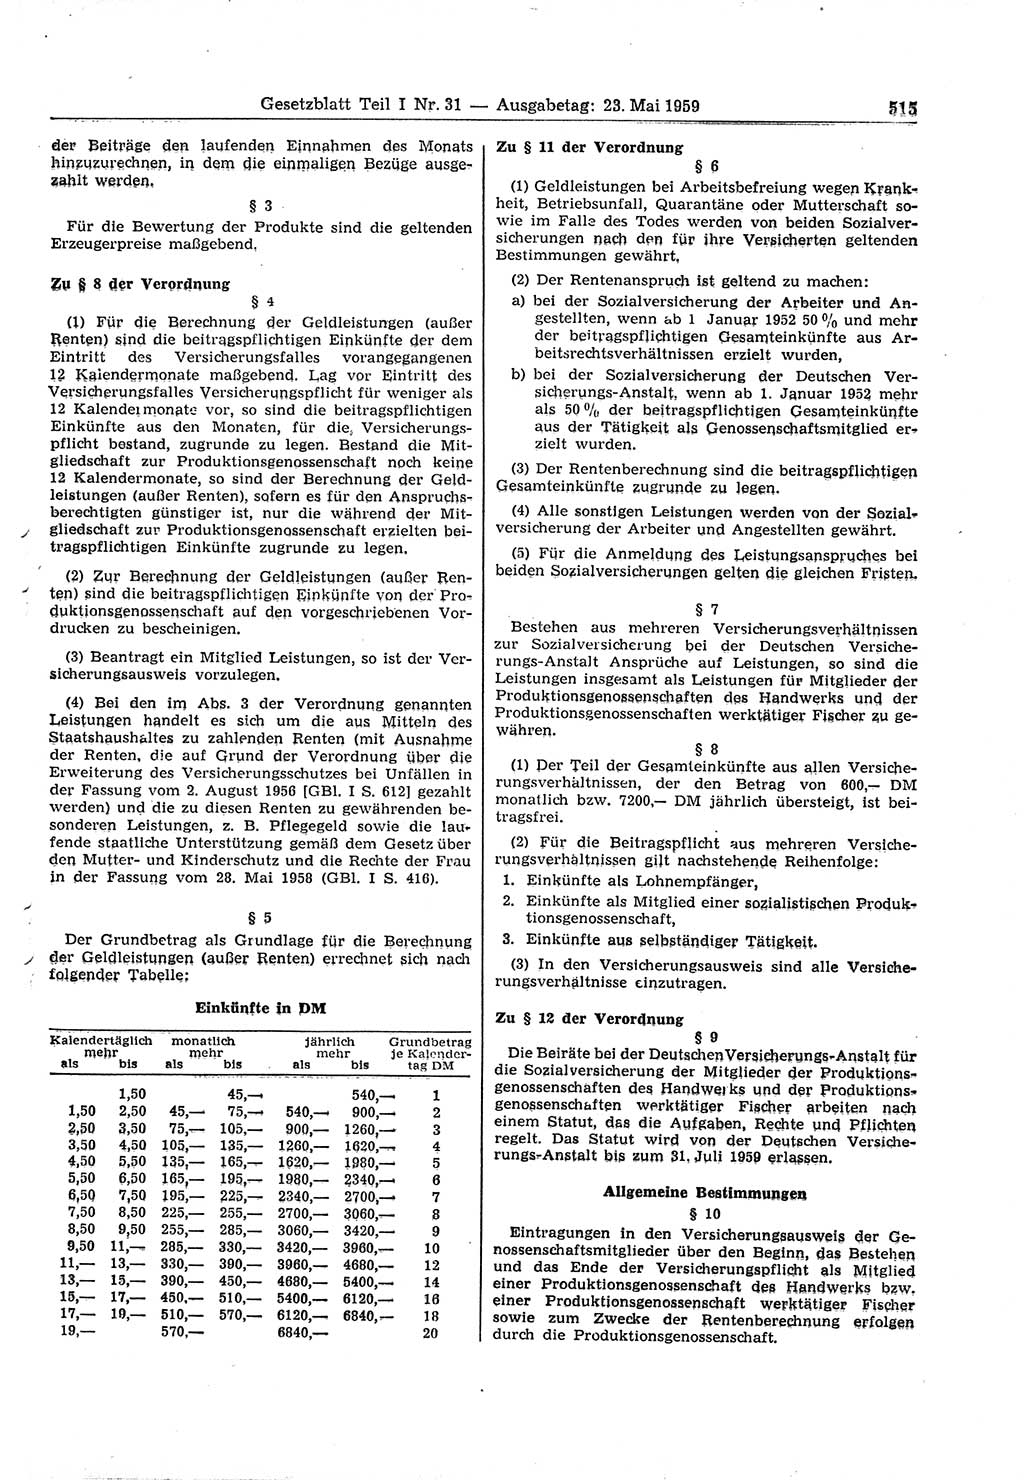 Gesetzblatt (GBl.) der Deutschen Demokratischen Republik (DDR) Teil Ⅰ 1959, Seite 515 (GBl. DDR Ⅰ 1959, S. 515)